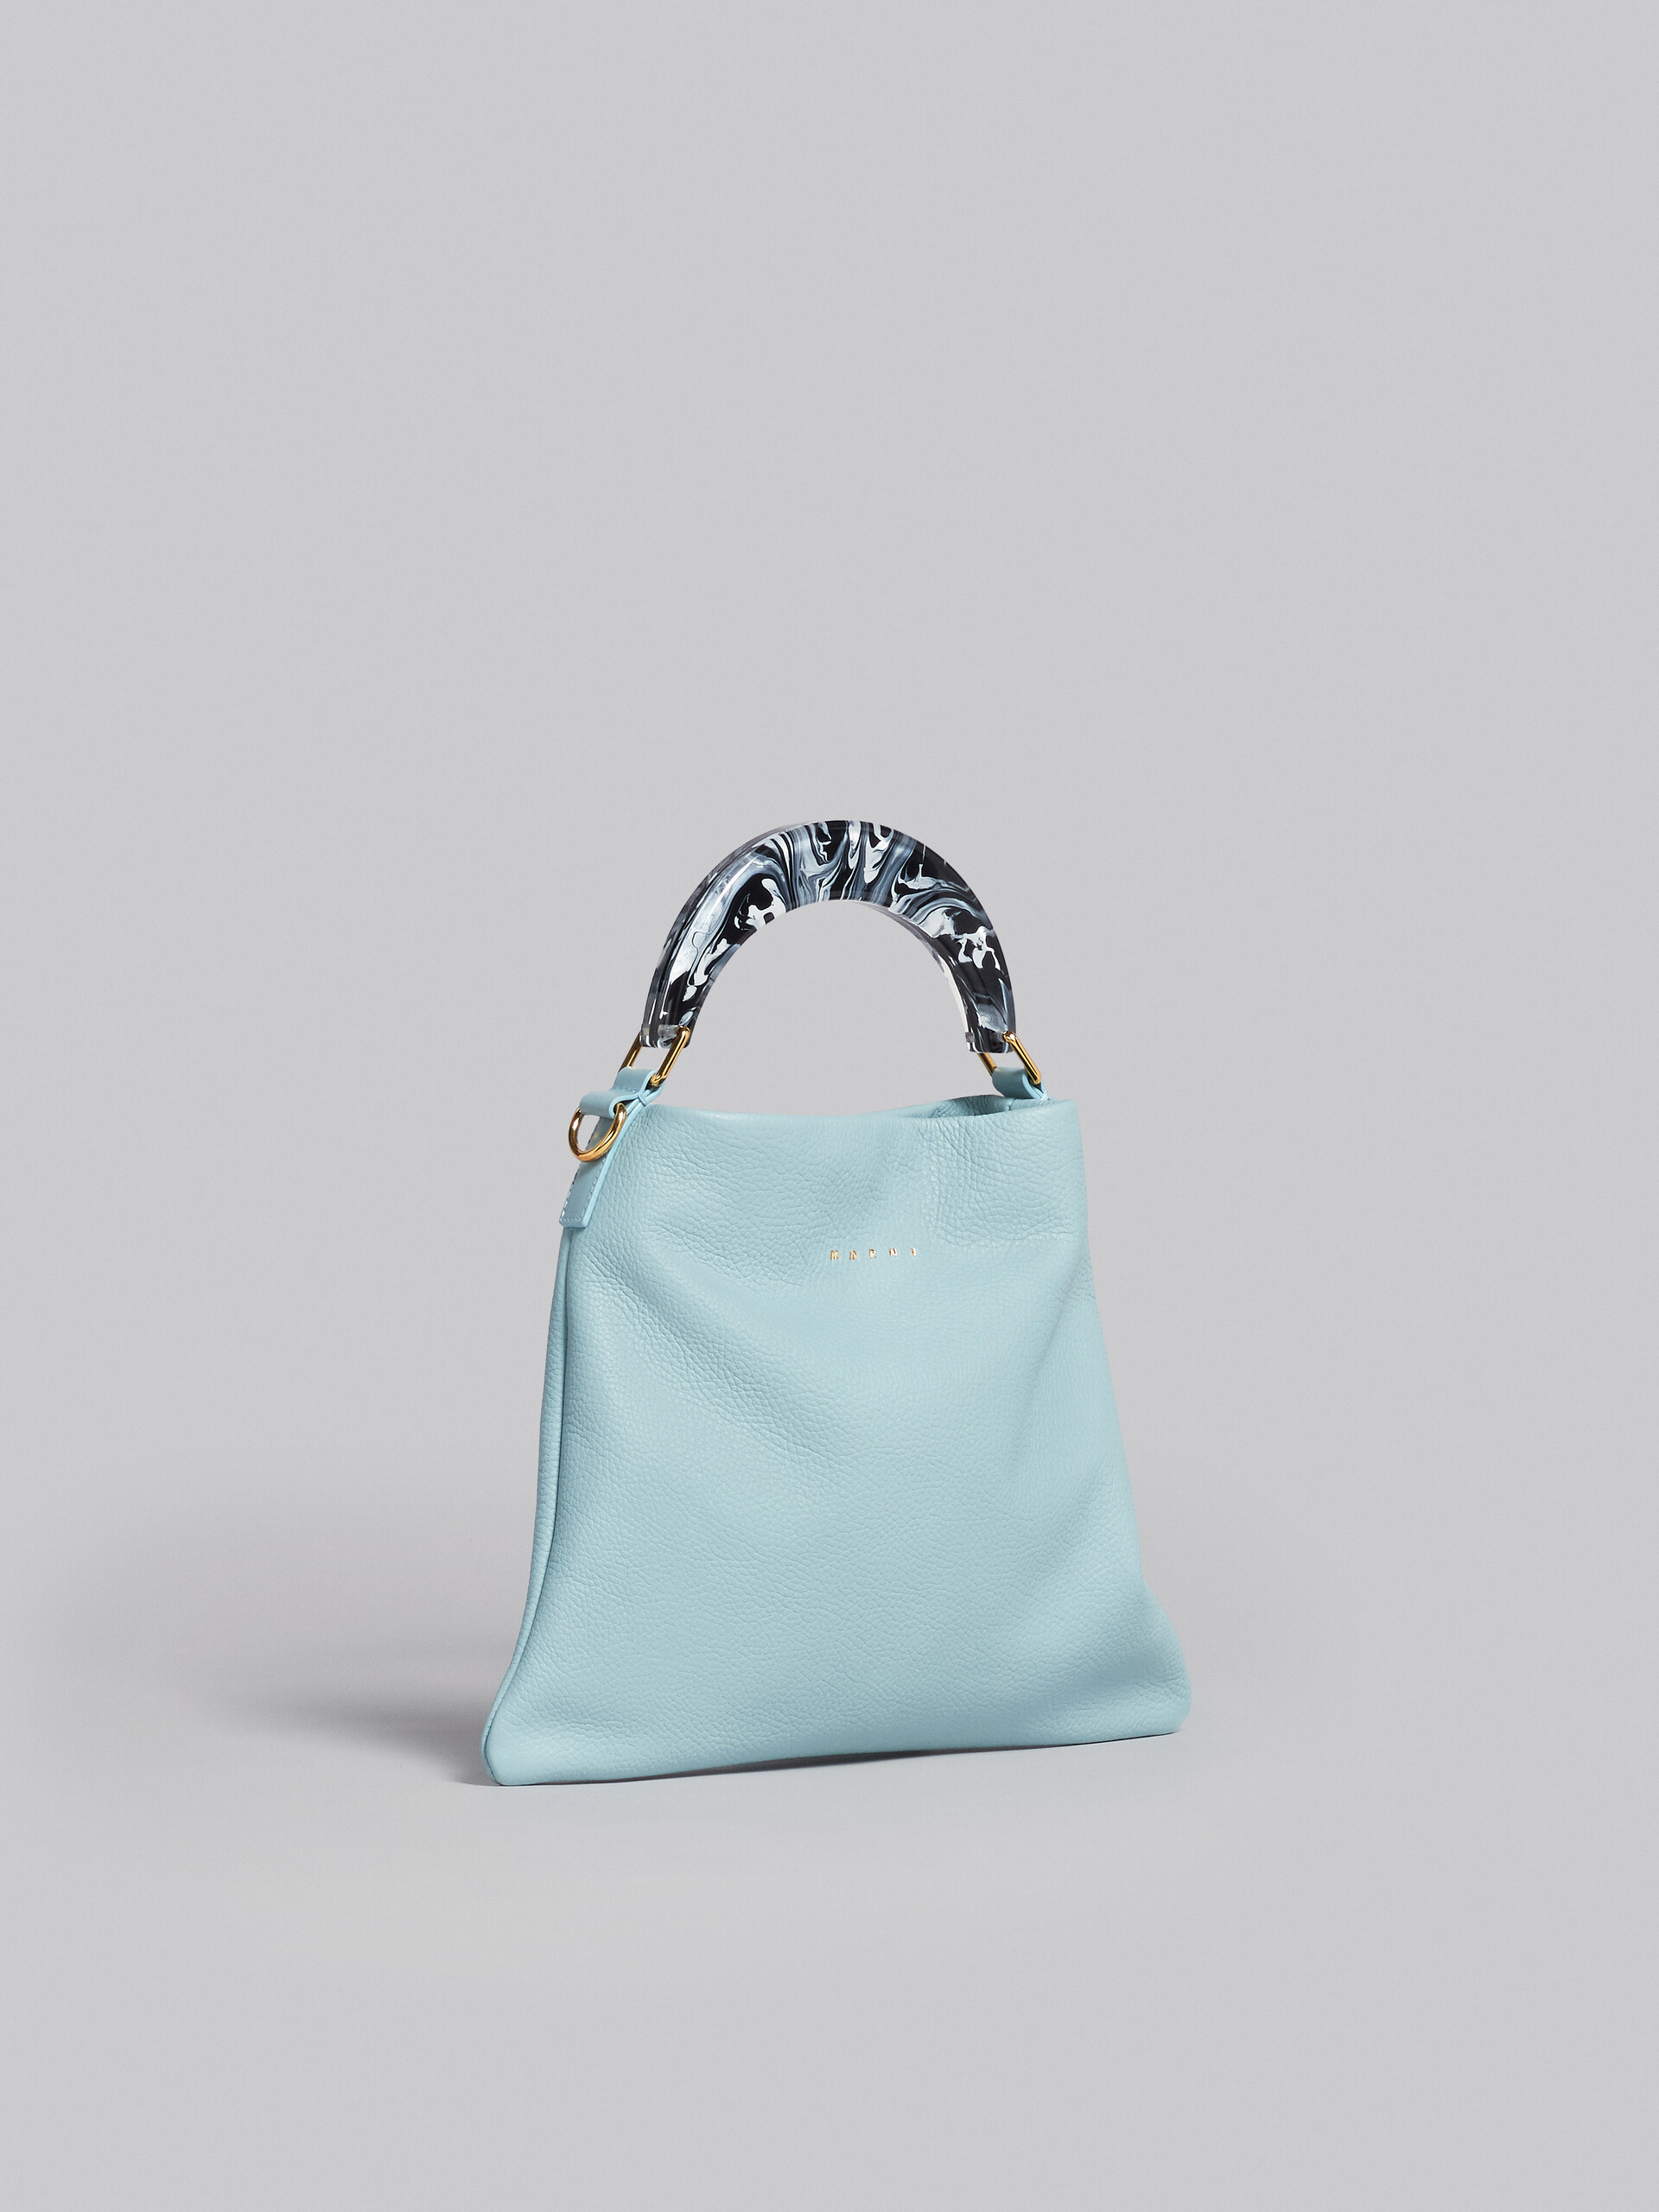 Venice Small Bag in light blue leather - Shoulder Bag - Image 6